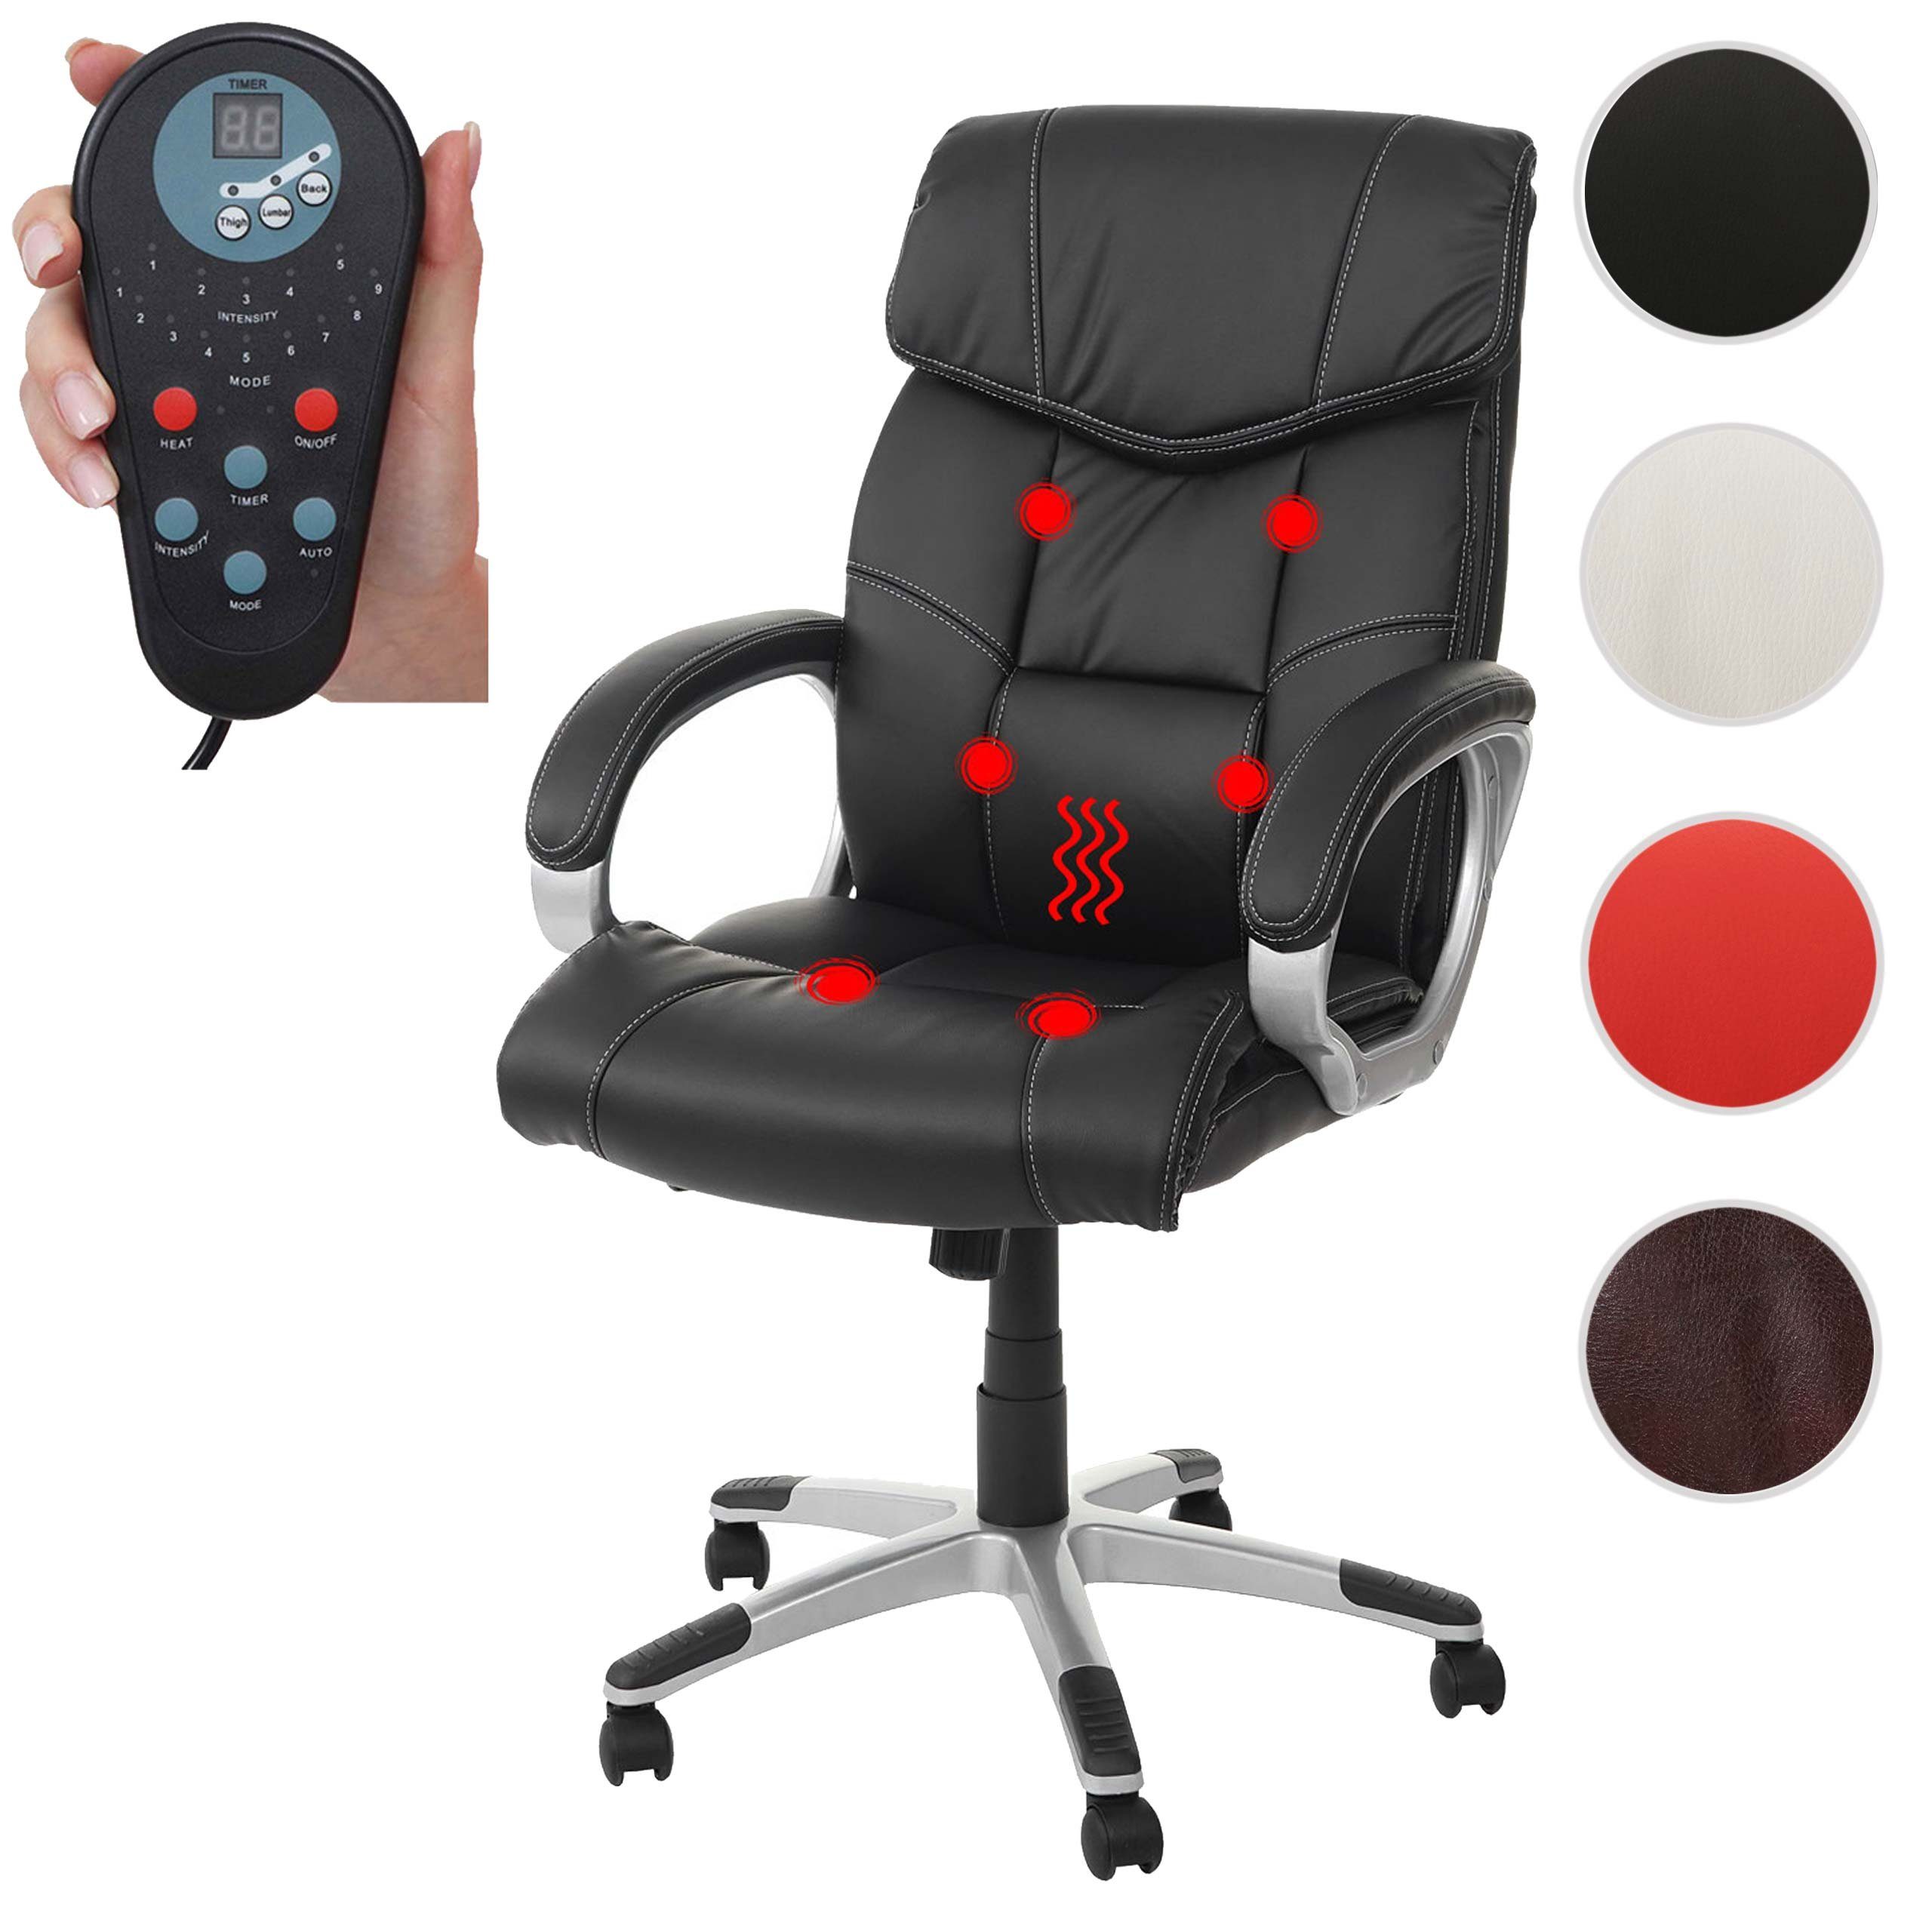 MCW Schreibtischstuhl MCW-A71-M, 6-Punkt-Massage, 9 schwarz Timer Rückenlehne, Massageprogramme, Heizfunktion